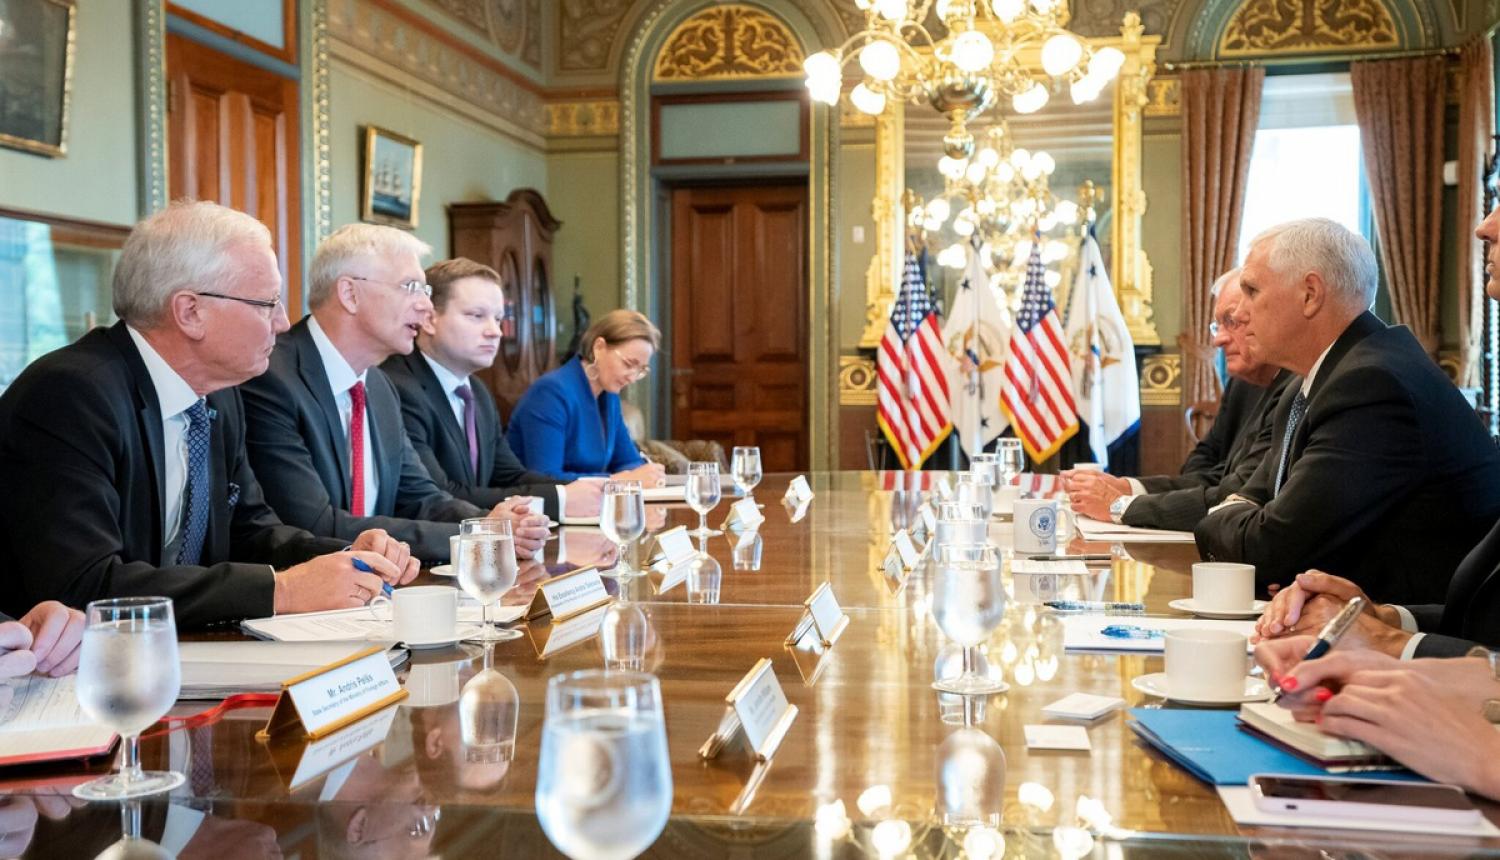 Kariņš: Pārliecība par ciešu un pozitīvu turpmāko Latvijas un ASV attiecību attīstību